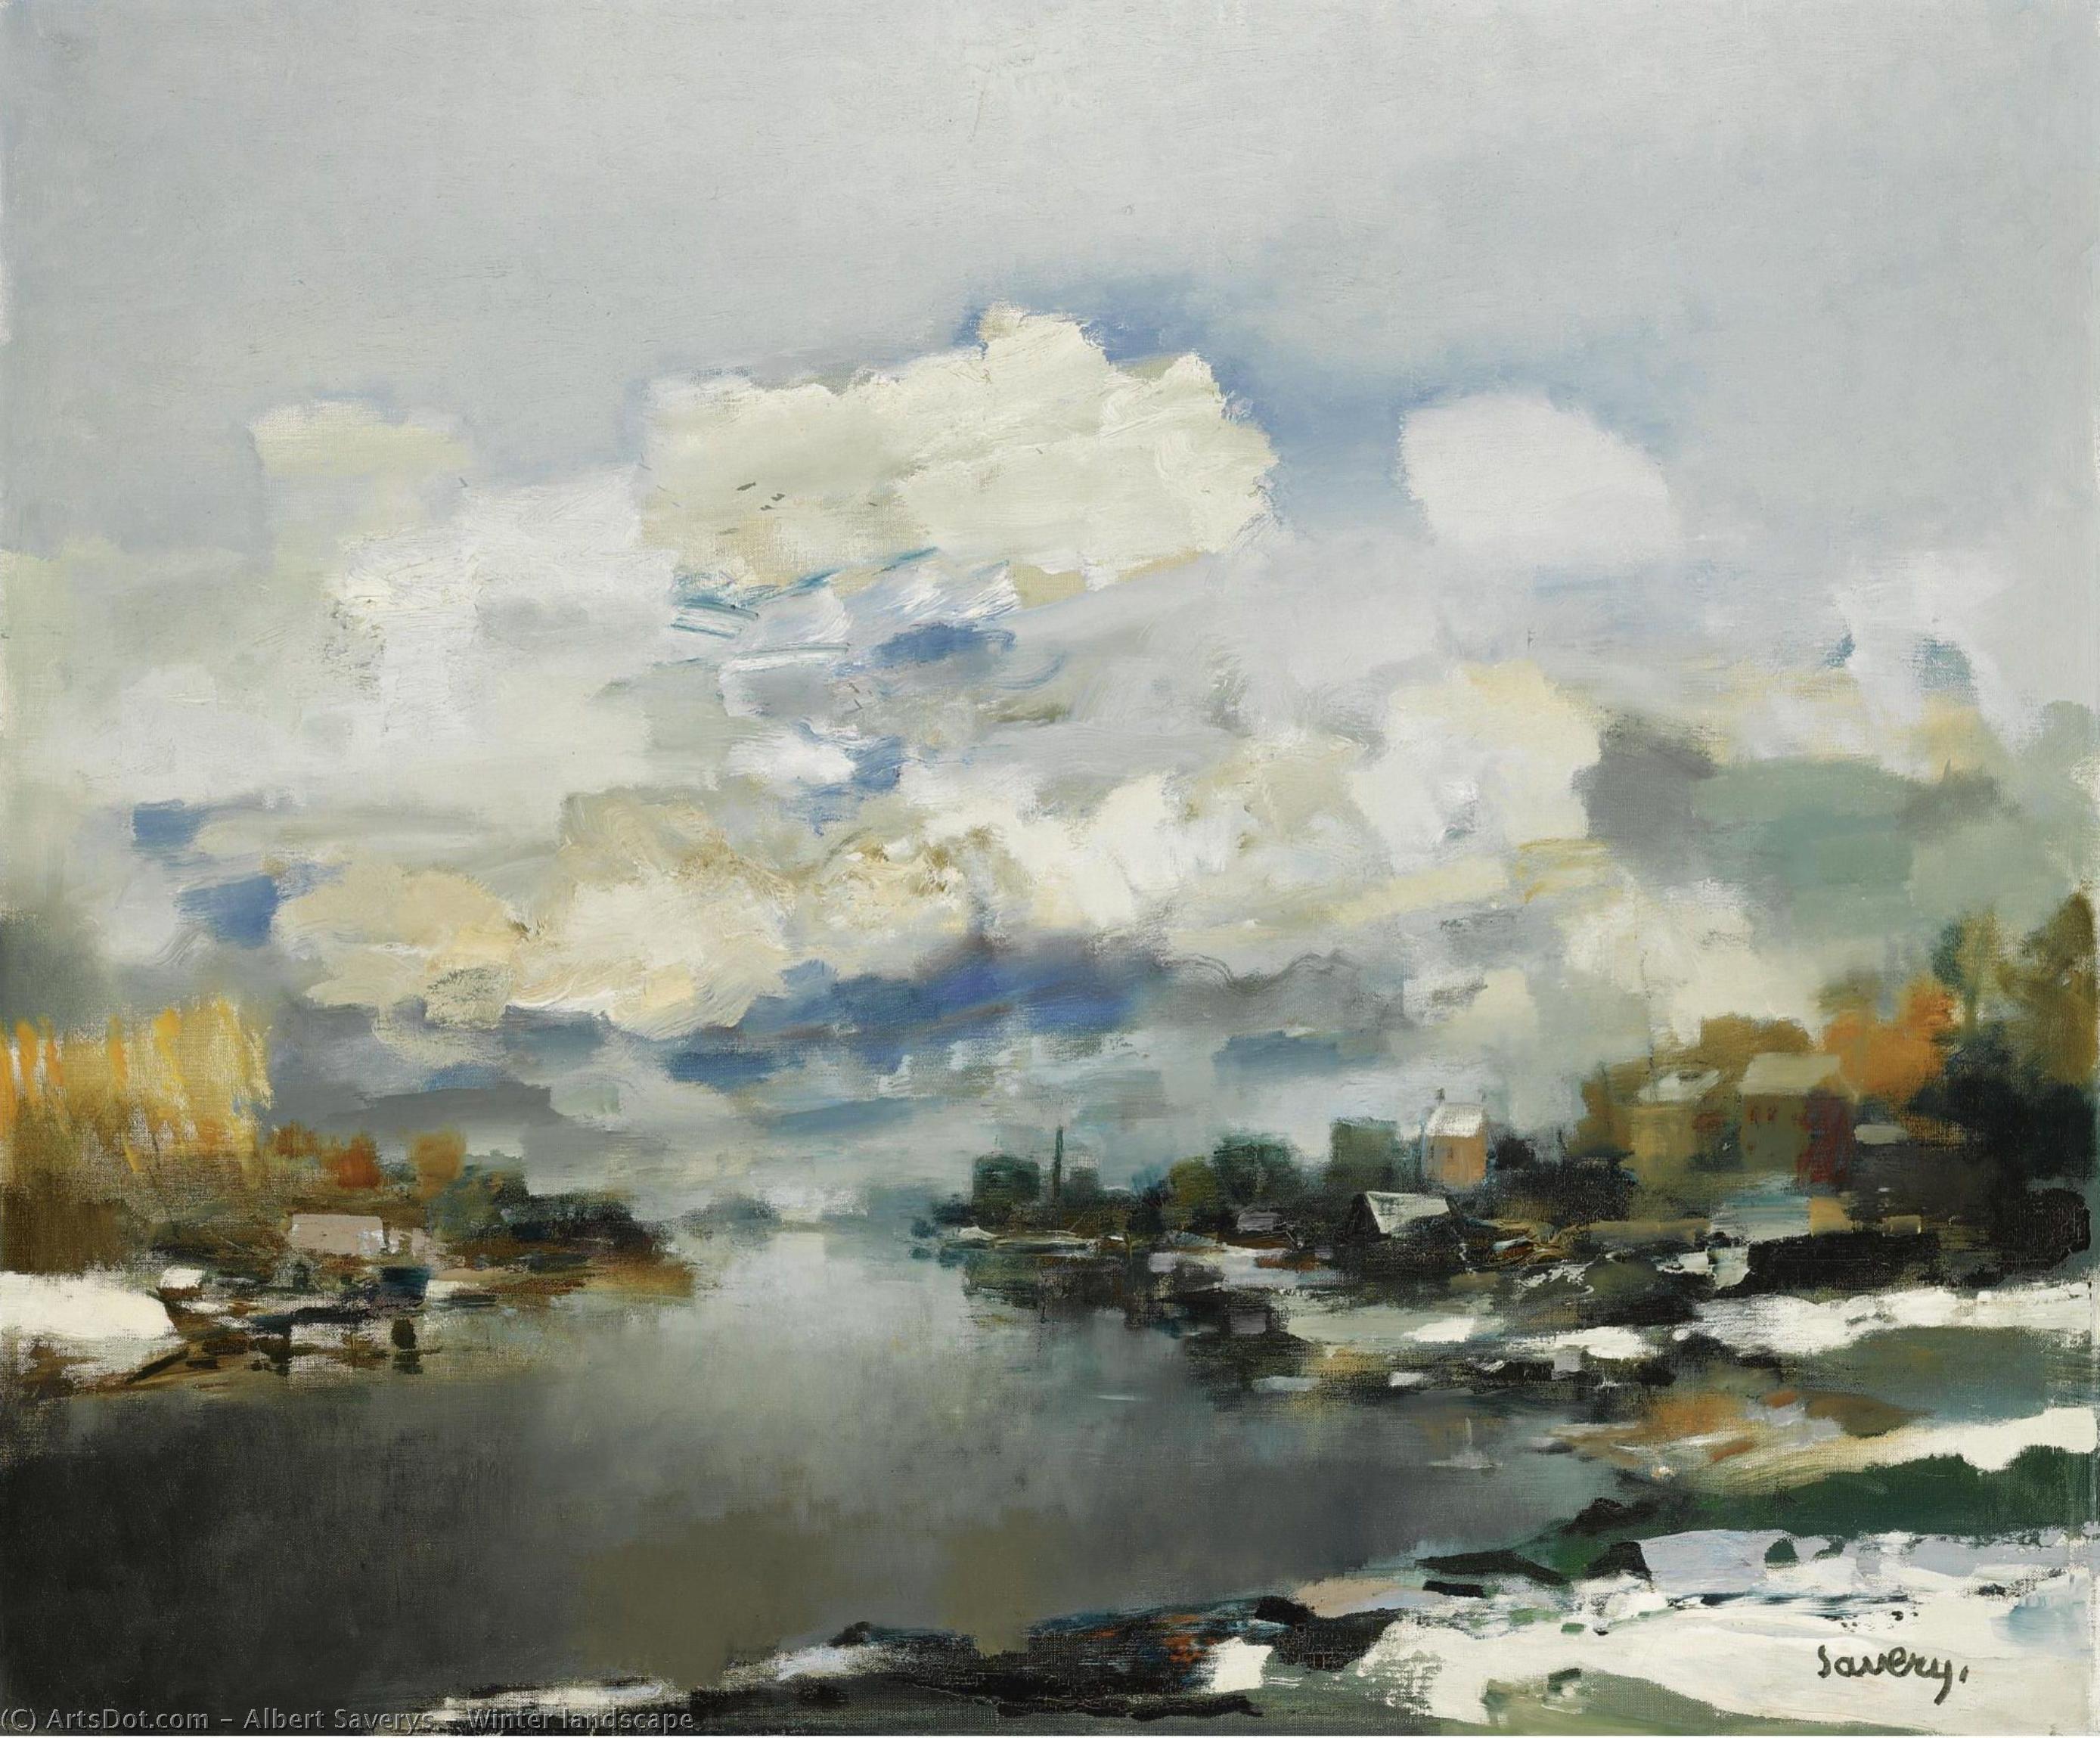 WikiOO.org - Encyclopedia of Fine Arts - Lukisan, Artwork Albert Saverys - Winter landscape